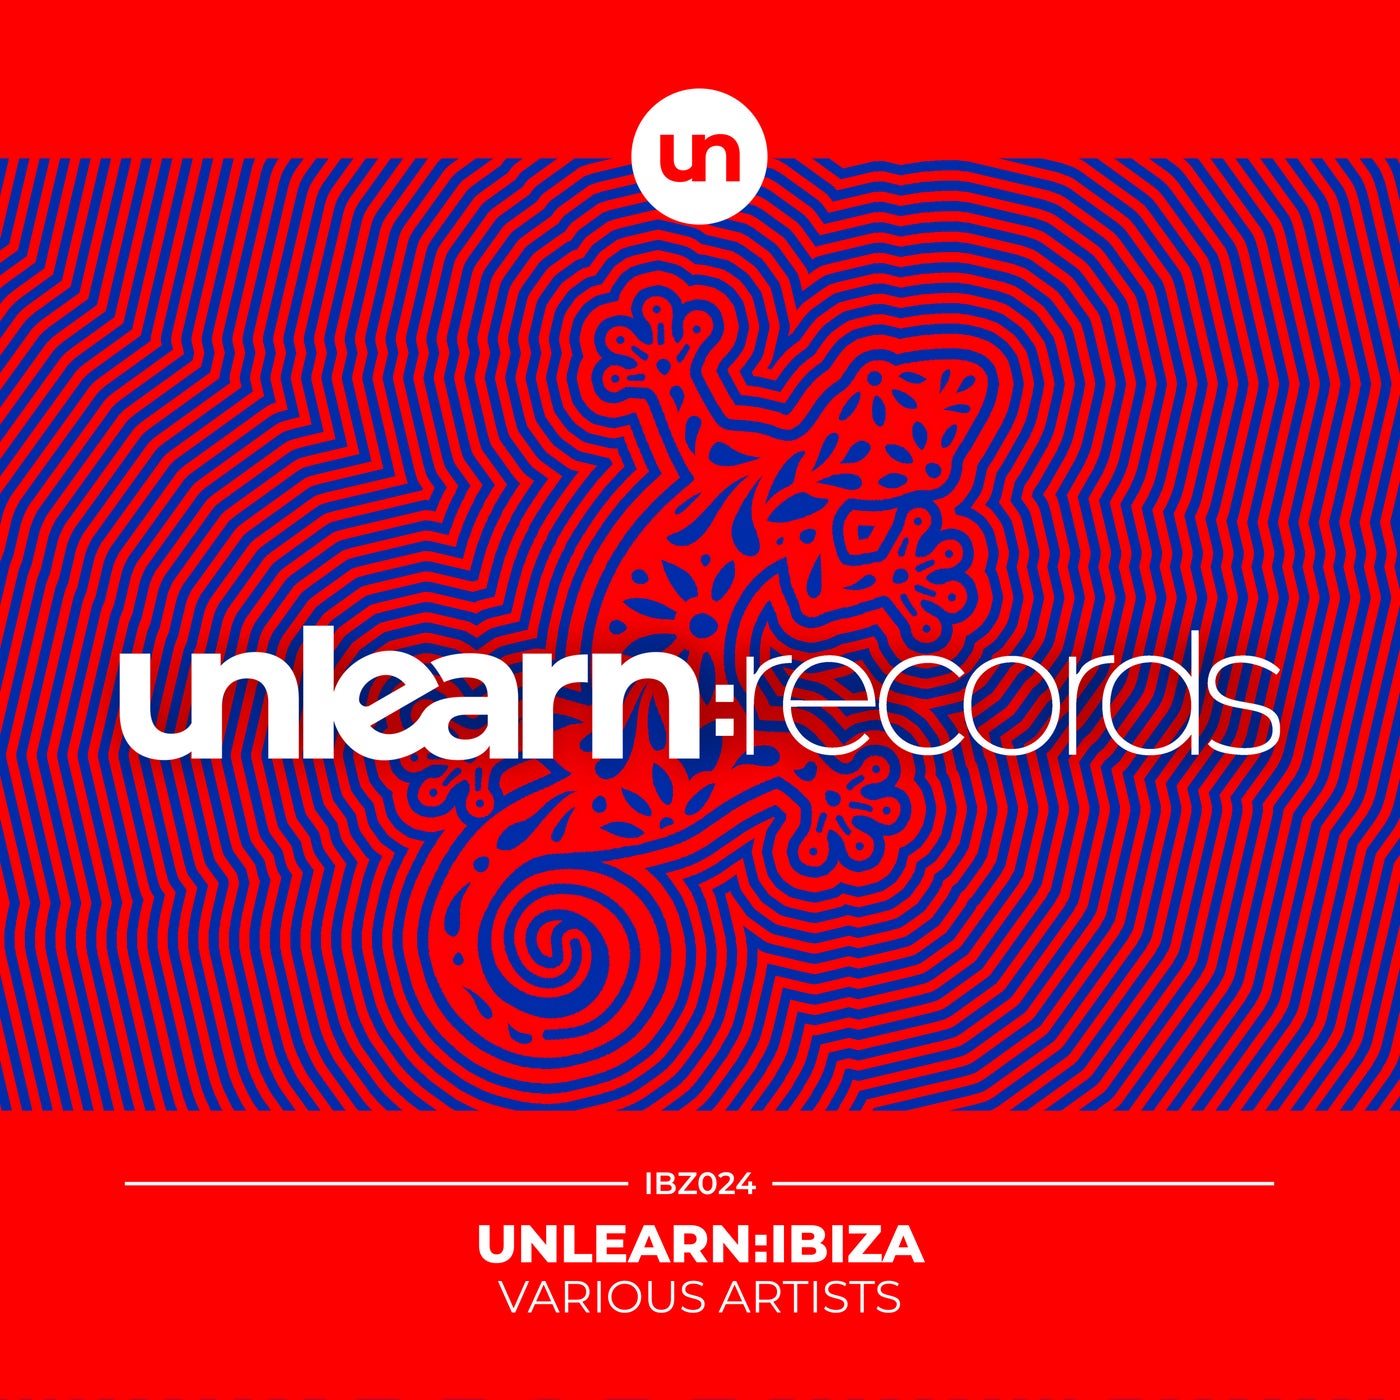 Unlearn:Ibiza 2024